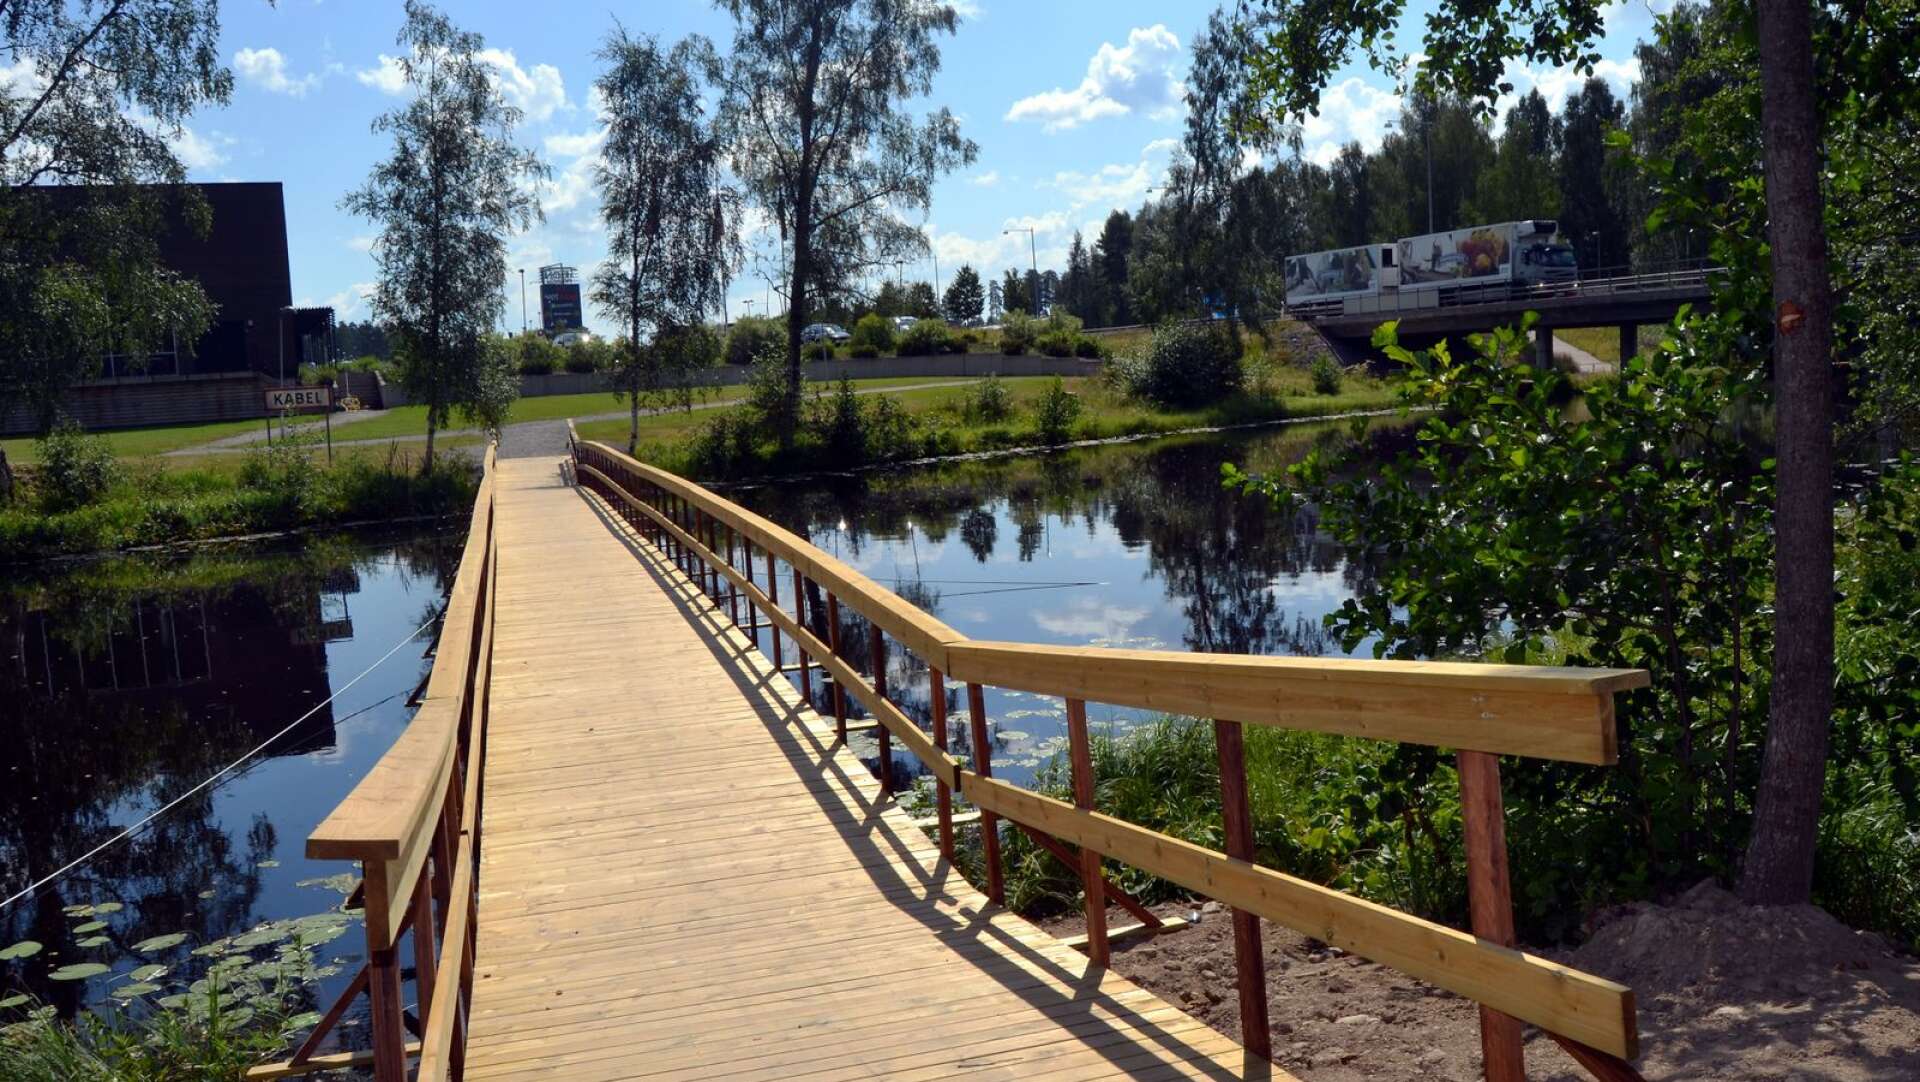 Gång- och cykelbron över Vrångsälven vid shoppingcentret anlades 2014 och blir kvar tills en ny permanent övergång är klar.